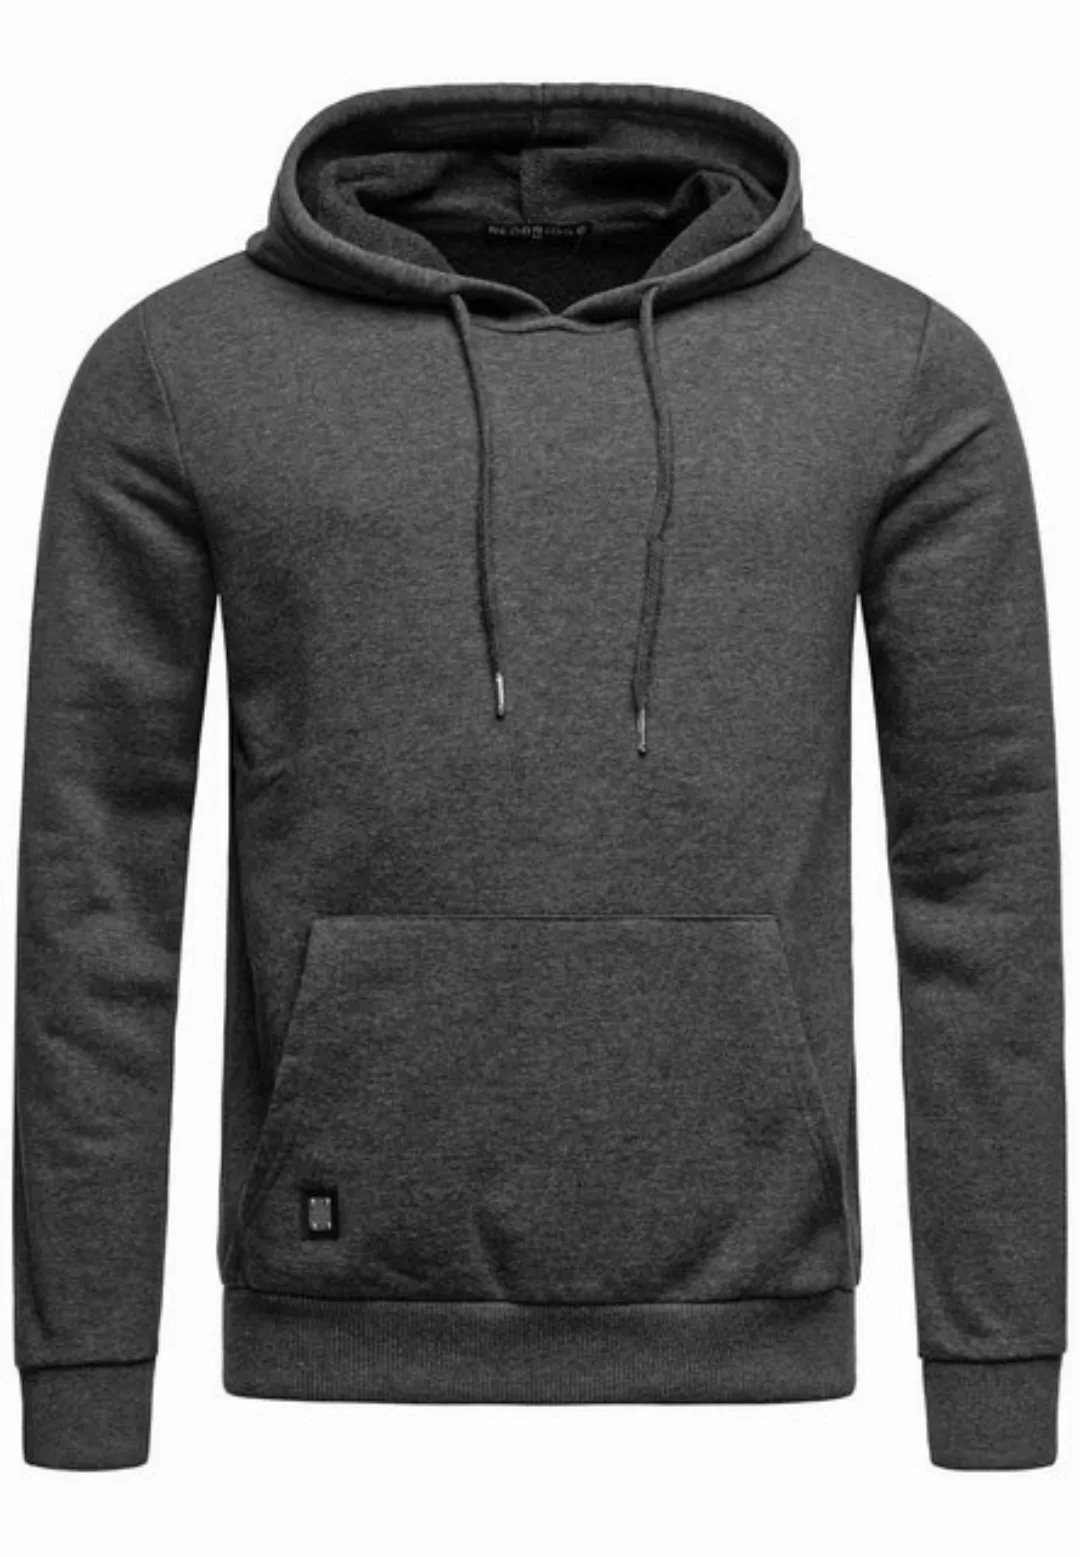 RedBridge Kapuzensweatshirt Hoodie mit Kängurutasche Premium Qualität günstig online kaufen